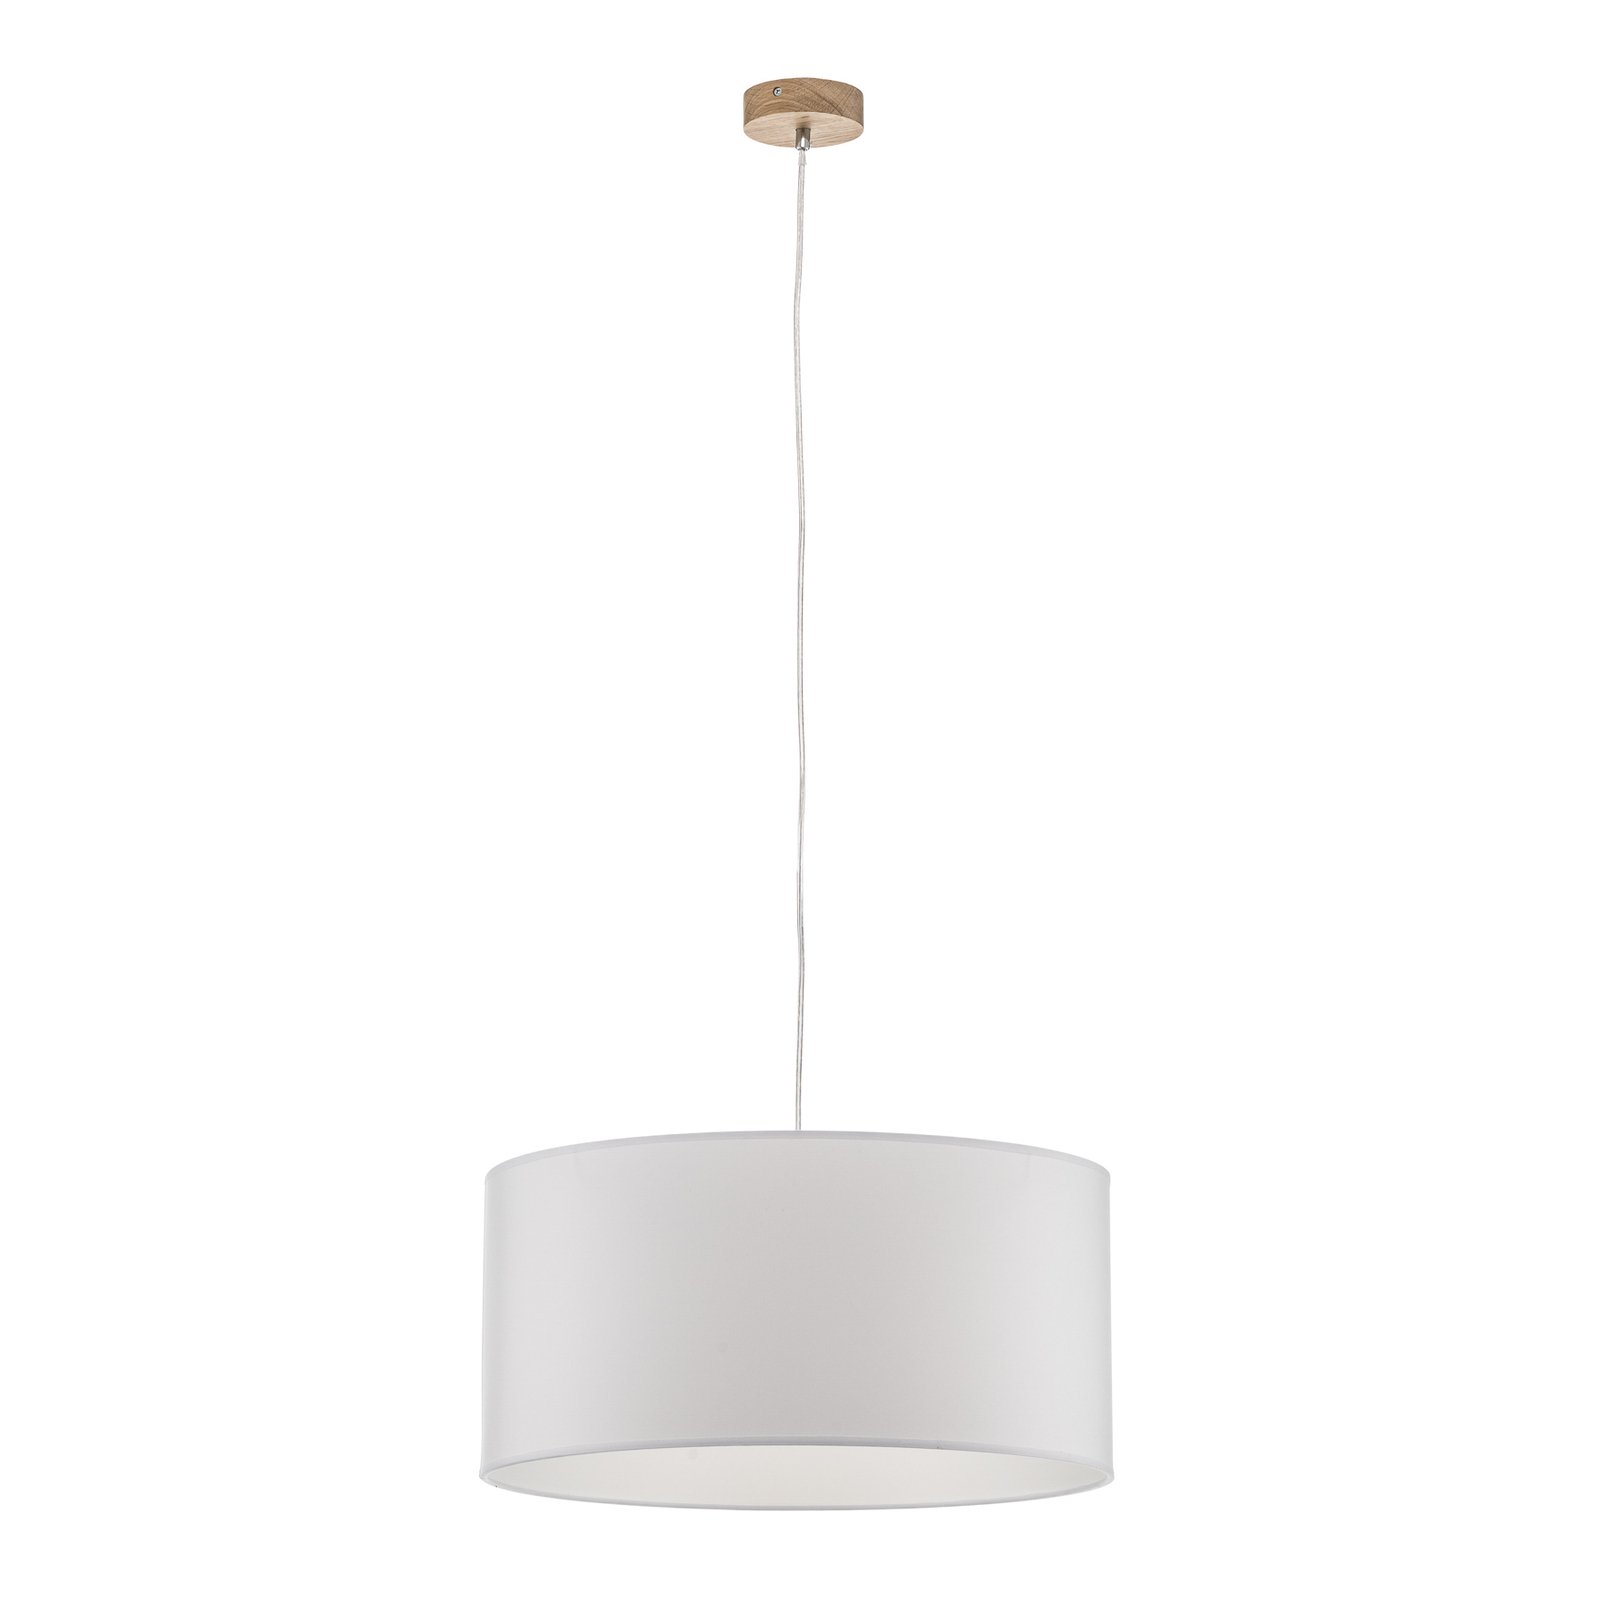 Corralee hanging light, white, 1-bulb